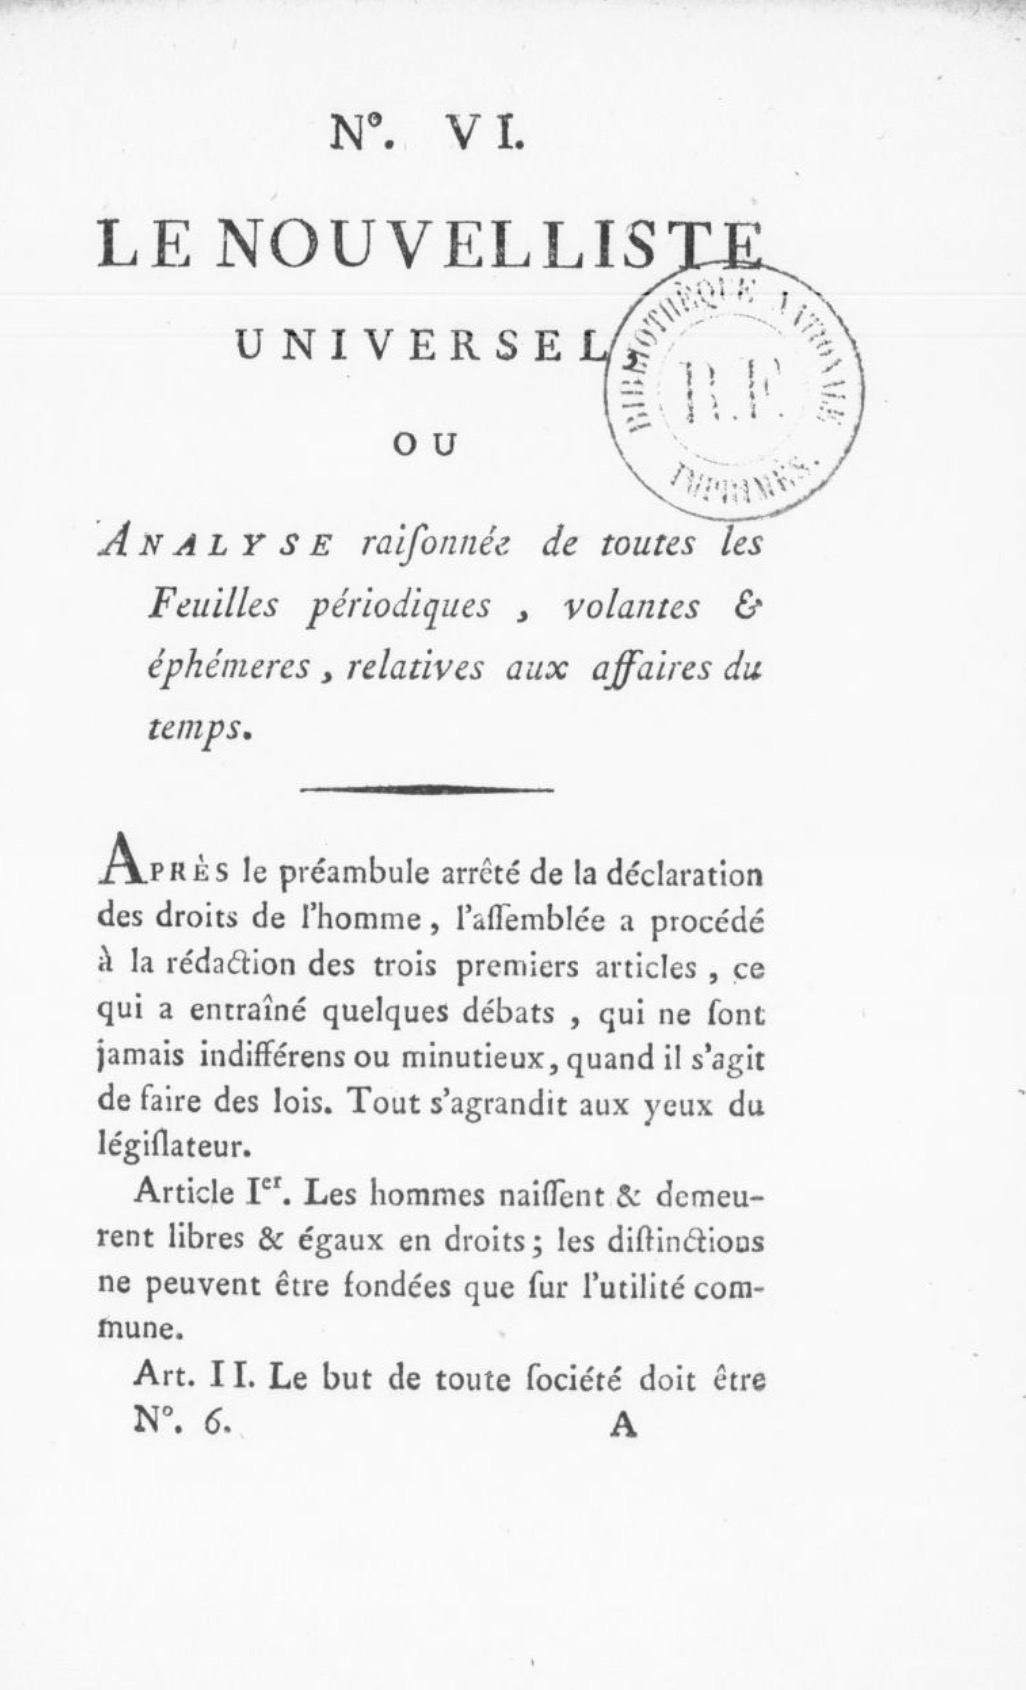 Le Nouvelliste universel ou Analyse raisonnée de toutes les feuilles périodiques volantes et éphémères relatives aux affaires du temps (1789)